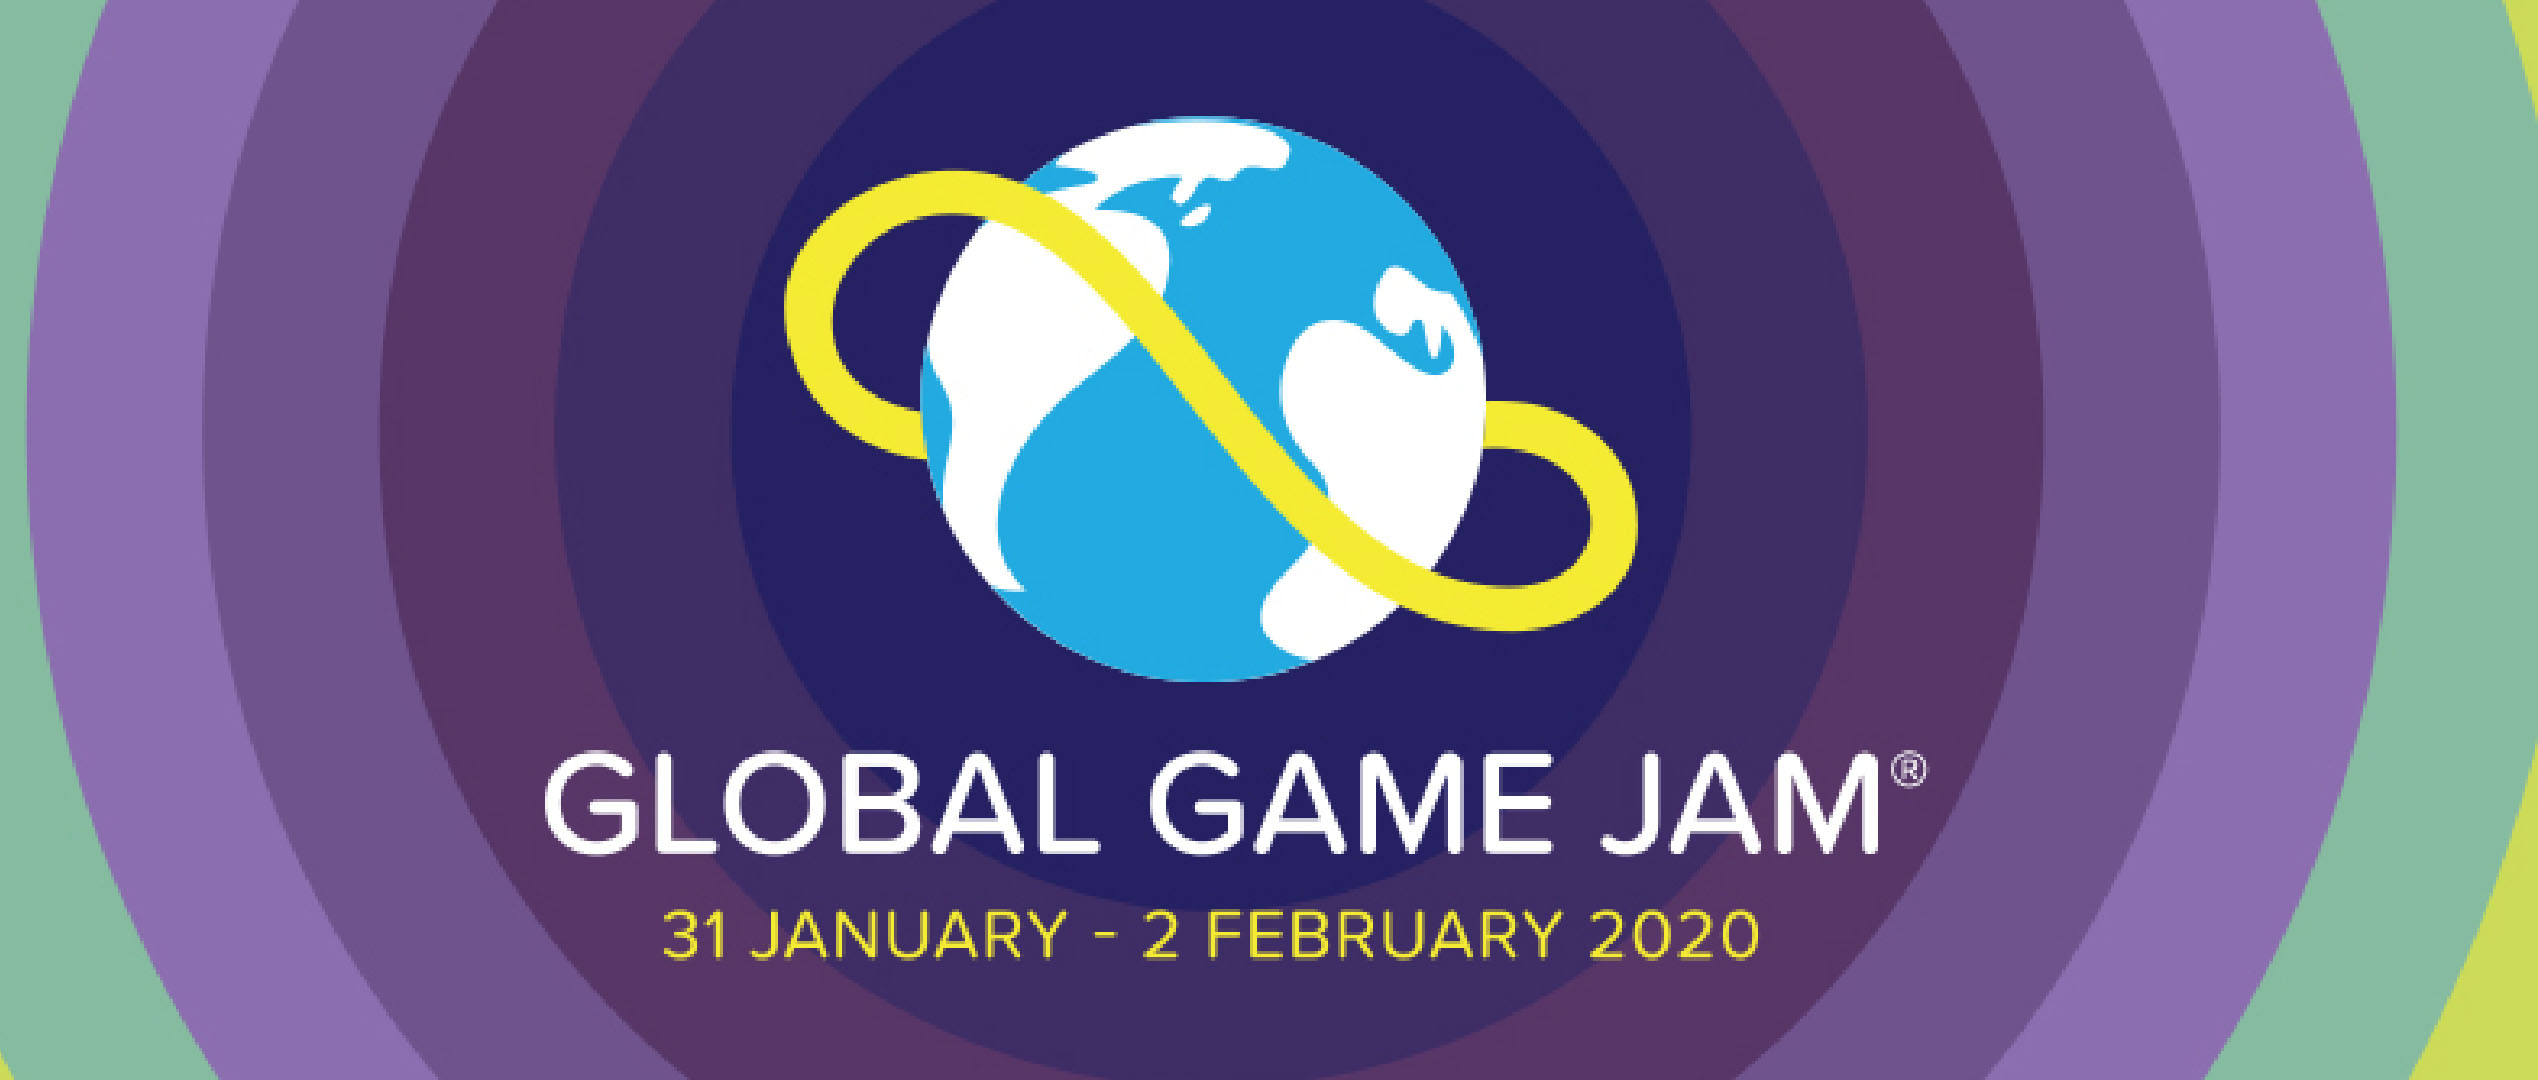 Rendez-vous à la Global Game Jam 2020 !